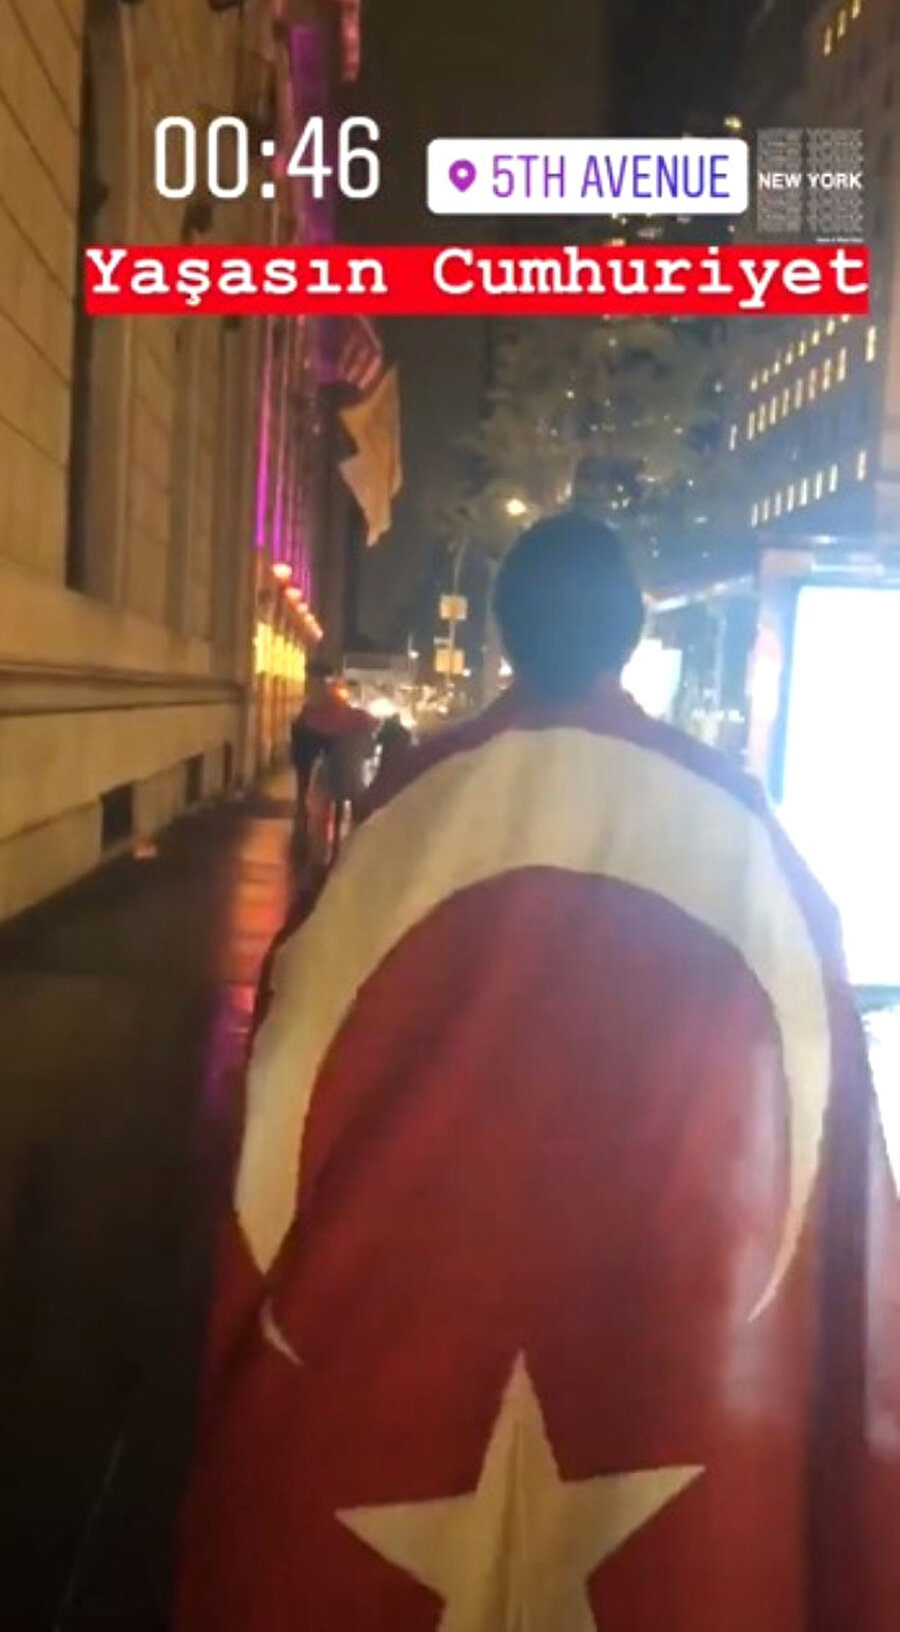  "Yaşasın Cumhuriyet" 
Sosyal medyayı aktif kullanan ünlüler arasında yer alan Nusret Gökçe, omzuna astığı Türk bayrağıyla New York sokaklarında yürüyerek bu anları "Yaşasın Cumhuriyet" notuyla sosyal medya hesabından paylaştı.